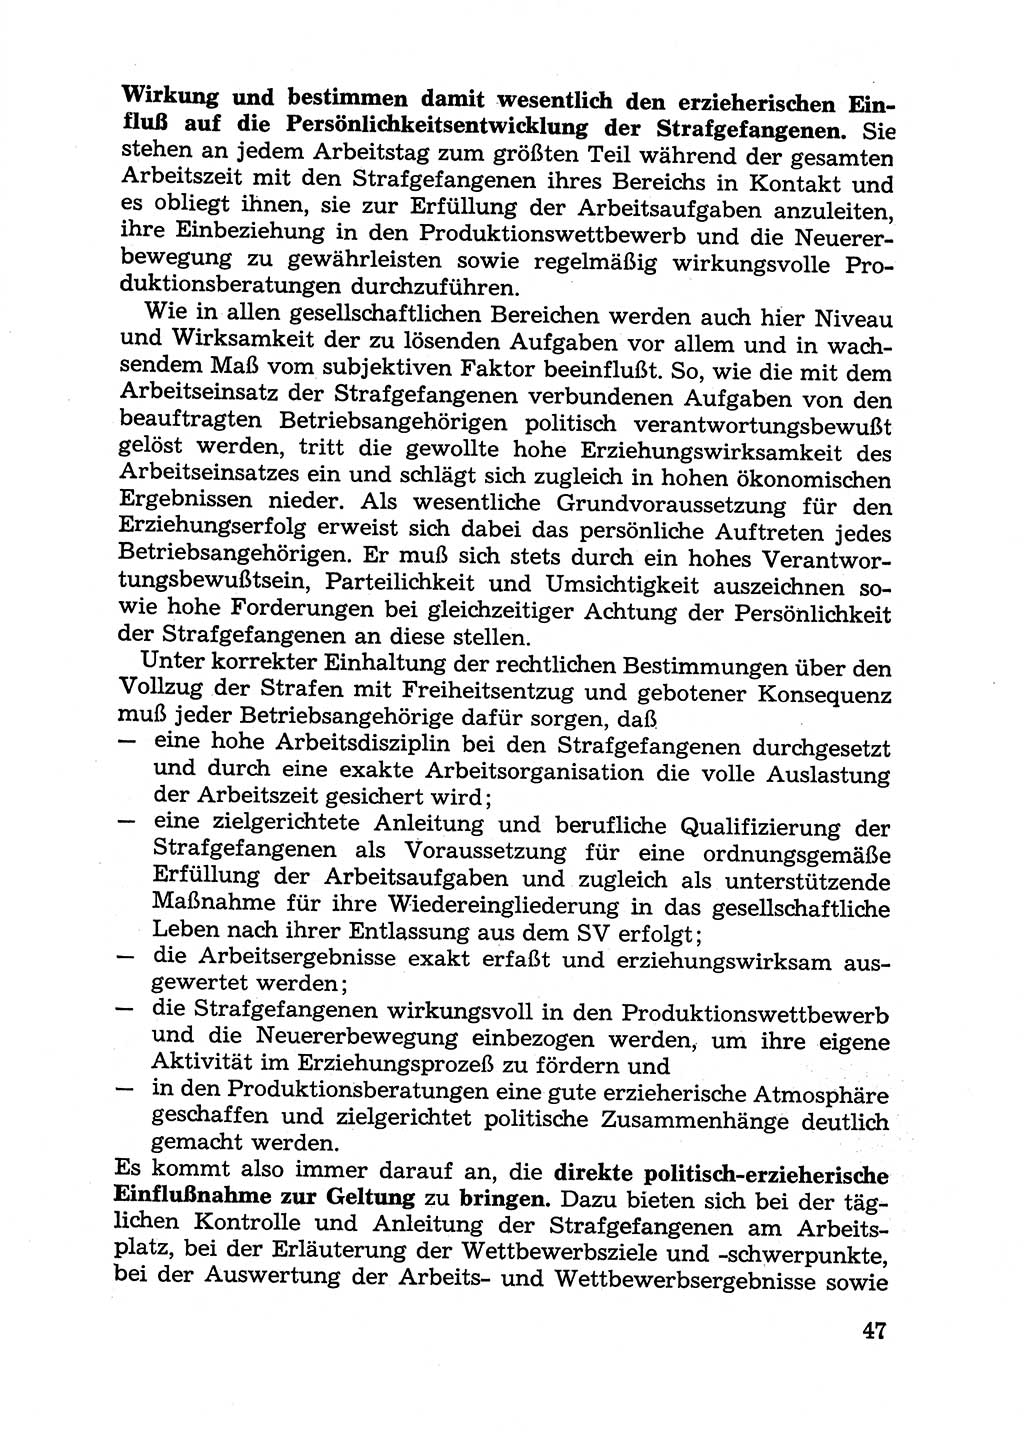 Handbuch für Betriebsangehörige, Abteilung Strafvollzug (SV) [Ministerium des Innern (MdI) Deutsche Demokratische Republik (DDR)] 1981, Seite 47 (Hb. BA Abt. SV MdI DDR 1981, S. 47)